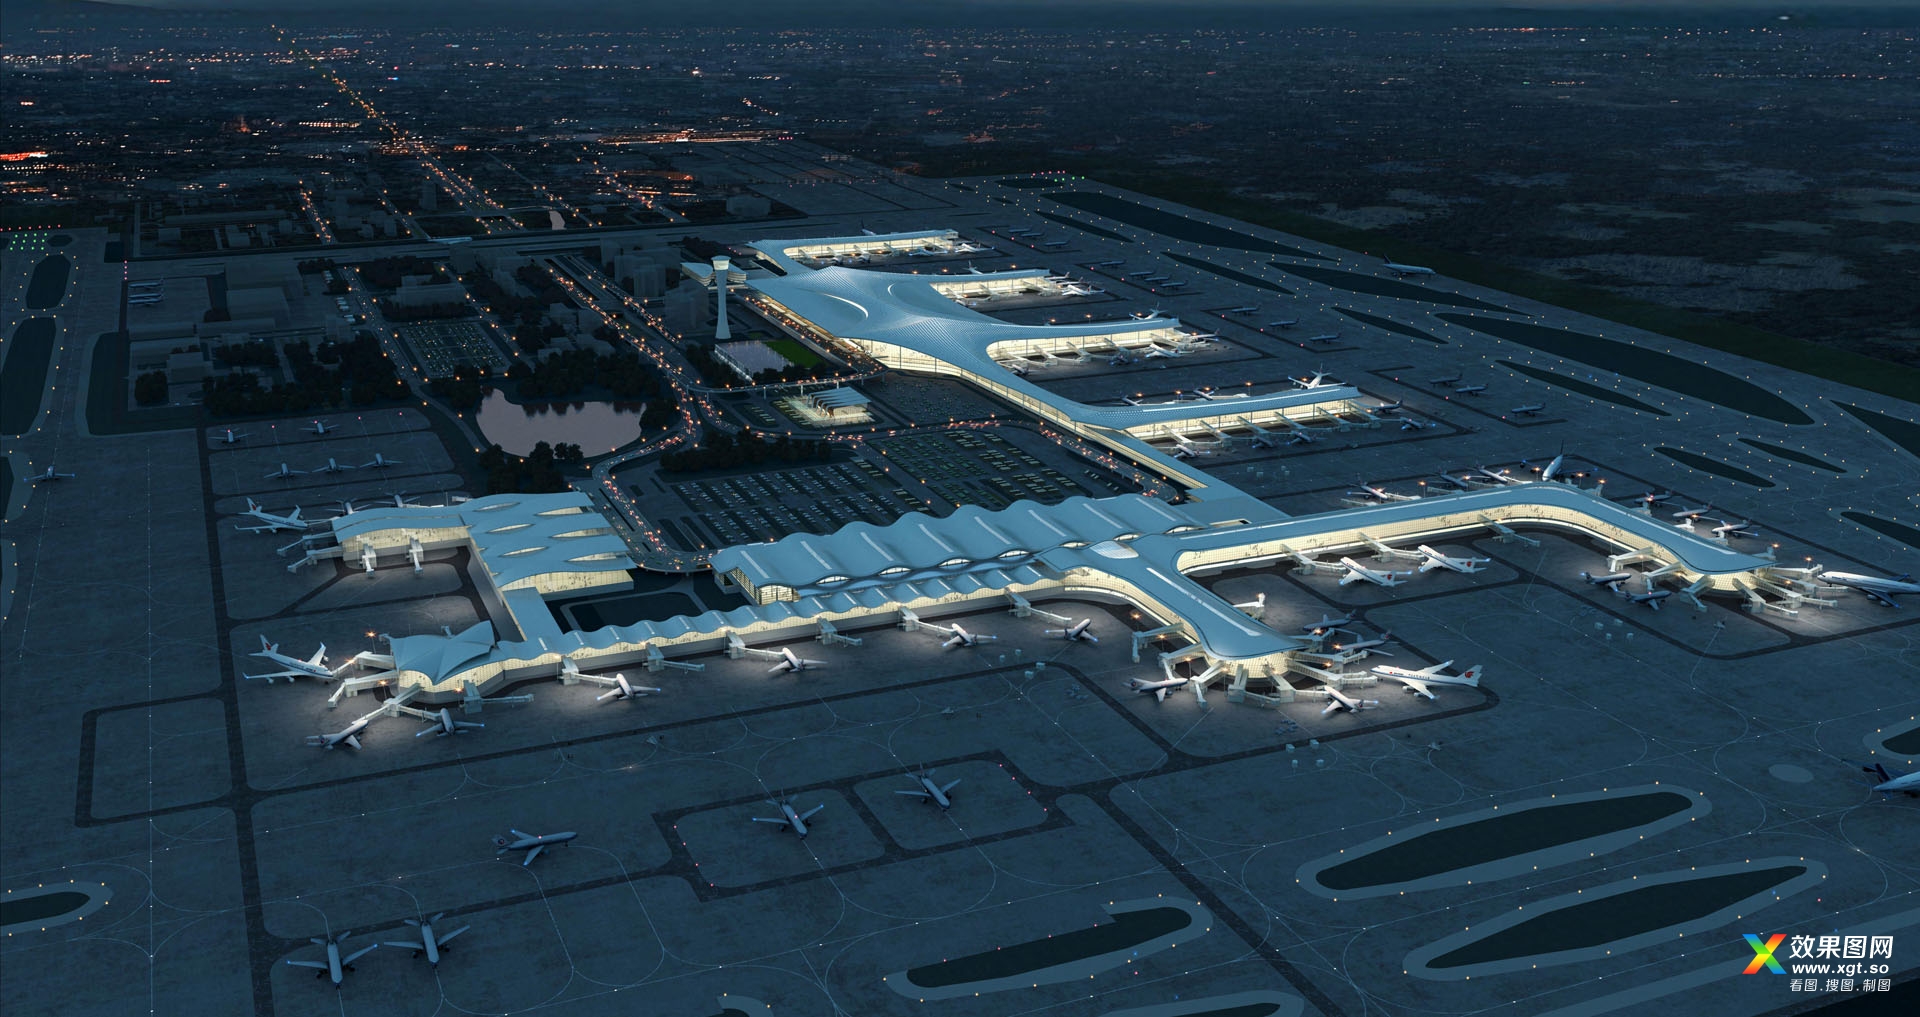 杭州萧山国际机场新建航站楼方案设计及陆侧核心区总体概念方案.